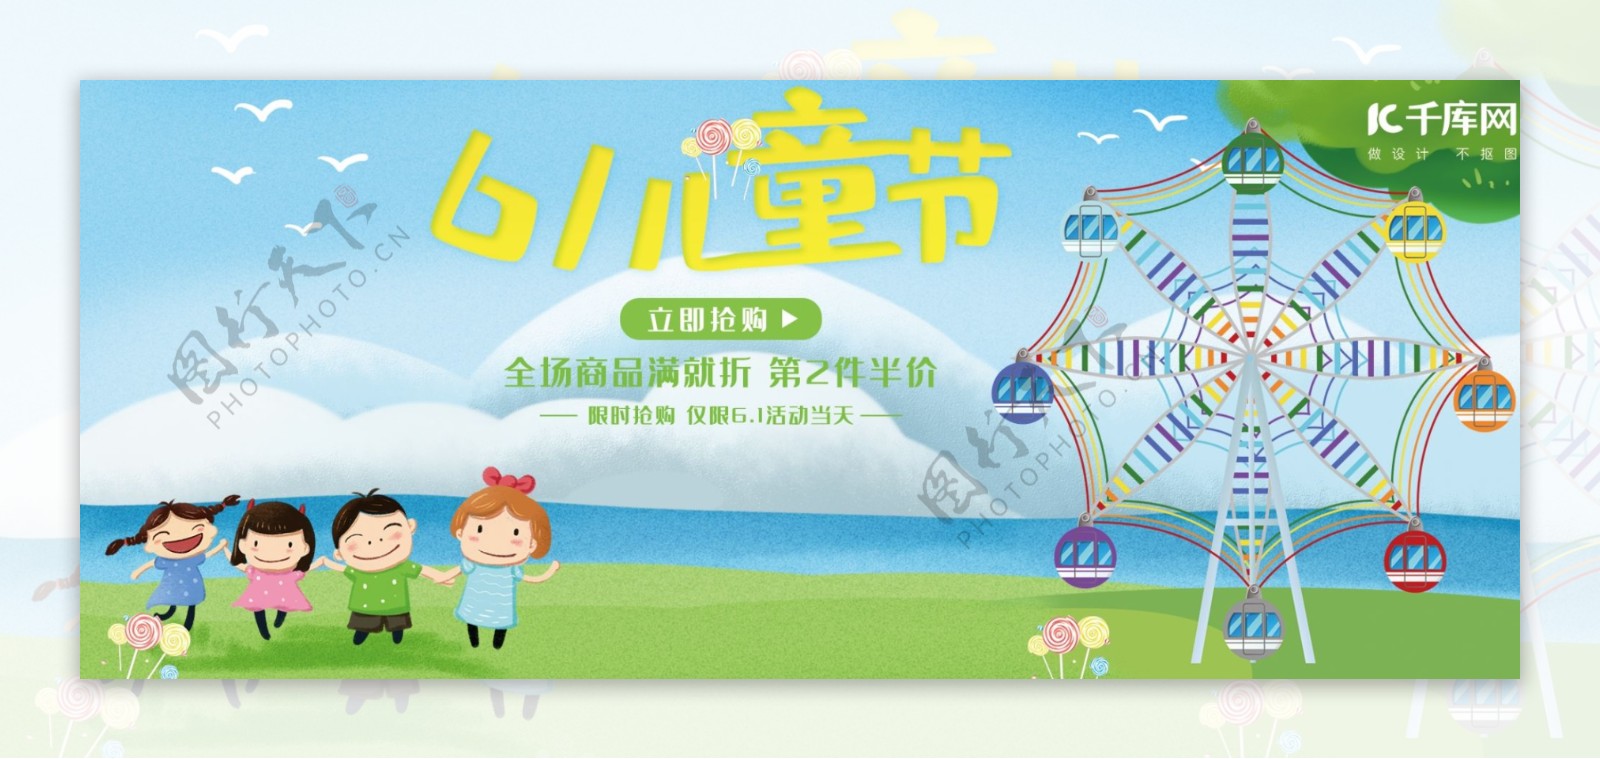 6.1儿童节电商banner